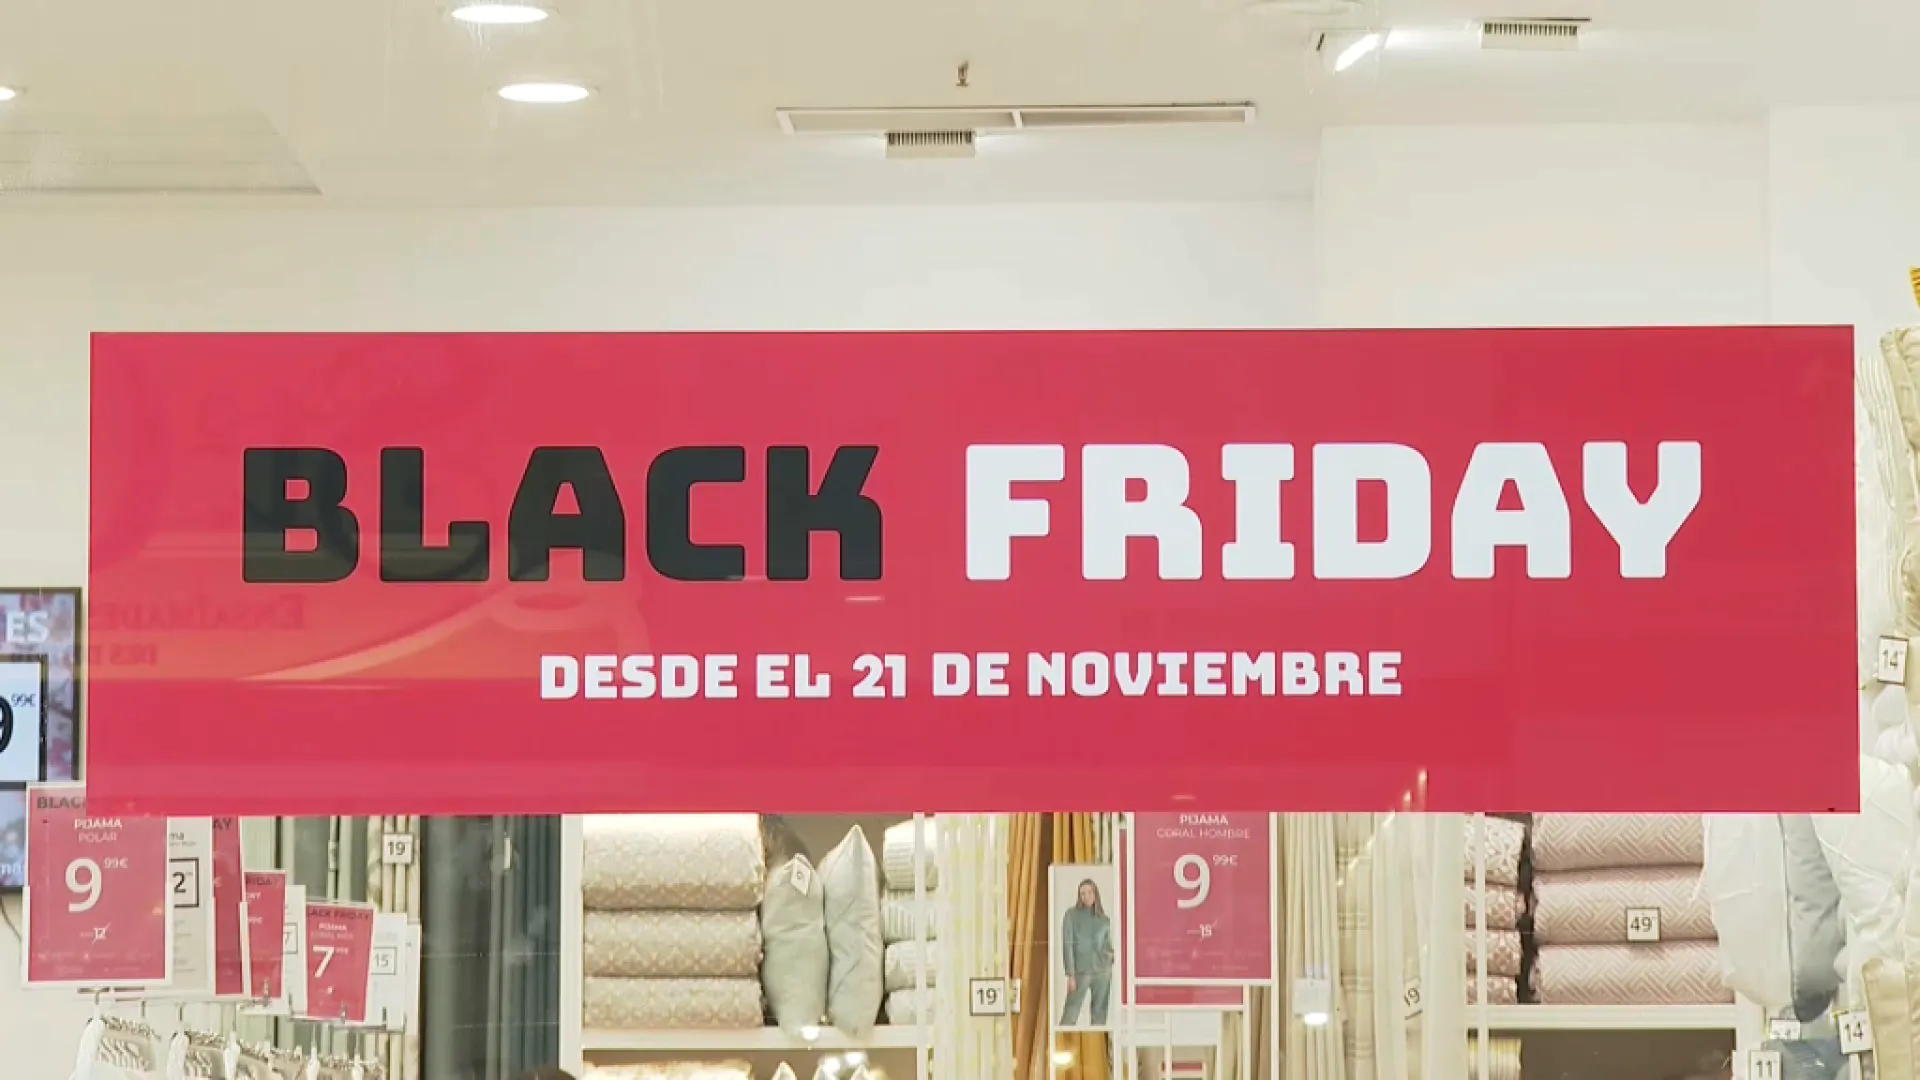 Black+Friday+2022%3A+degoteig+constant+a+les+botigues%2C+per%C3%B2+manco+ofertes+que+anys+anteriors